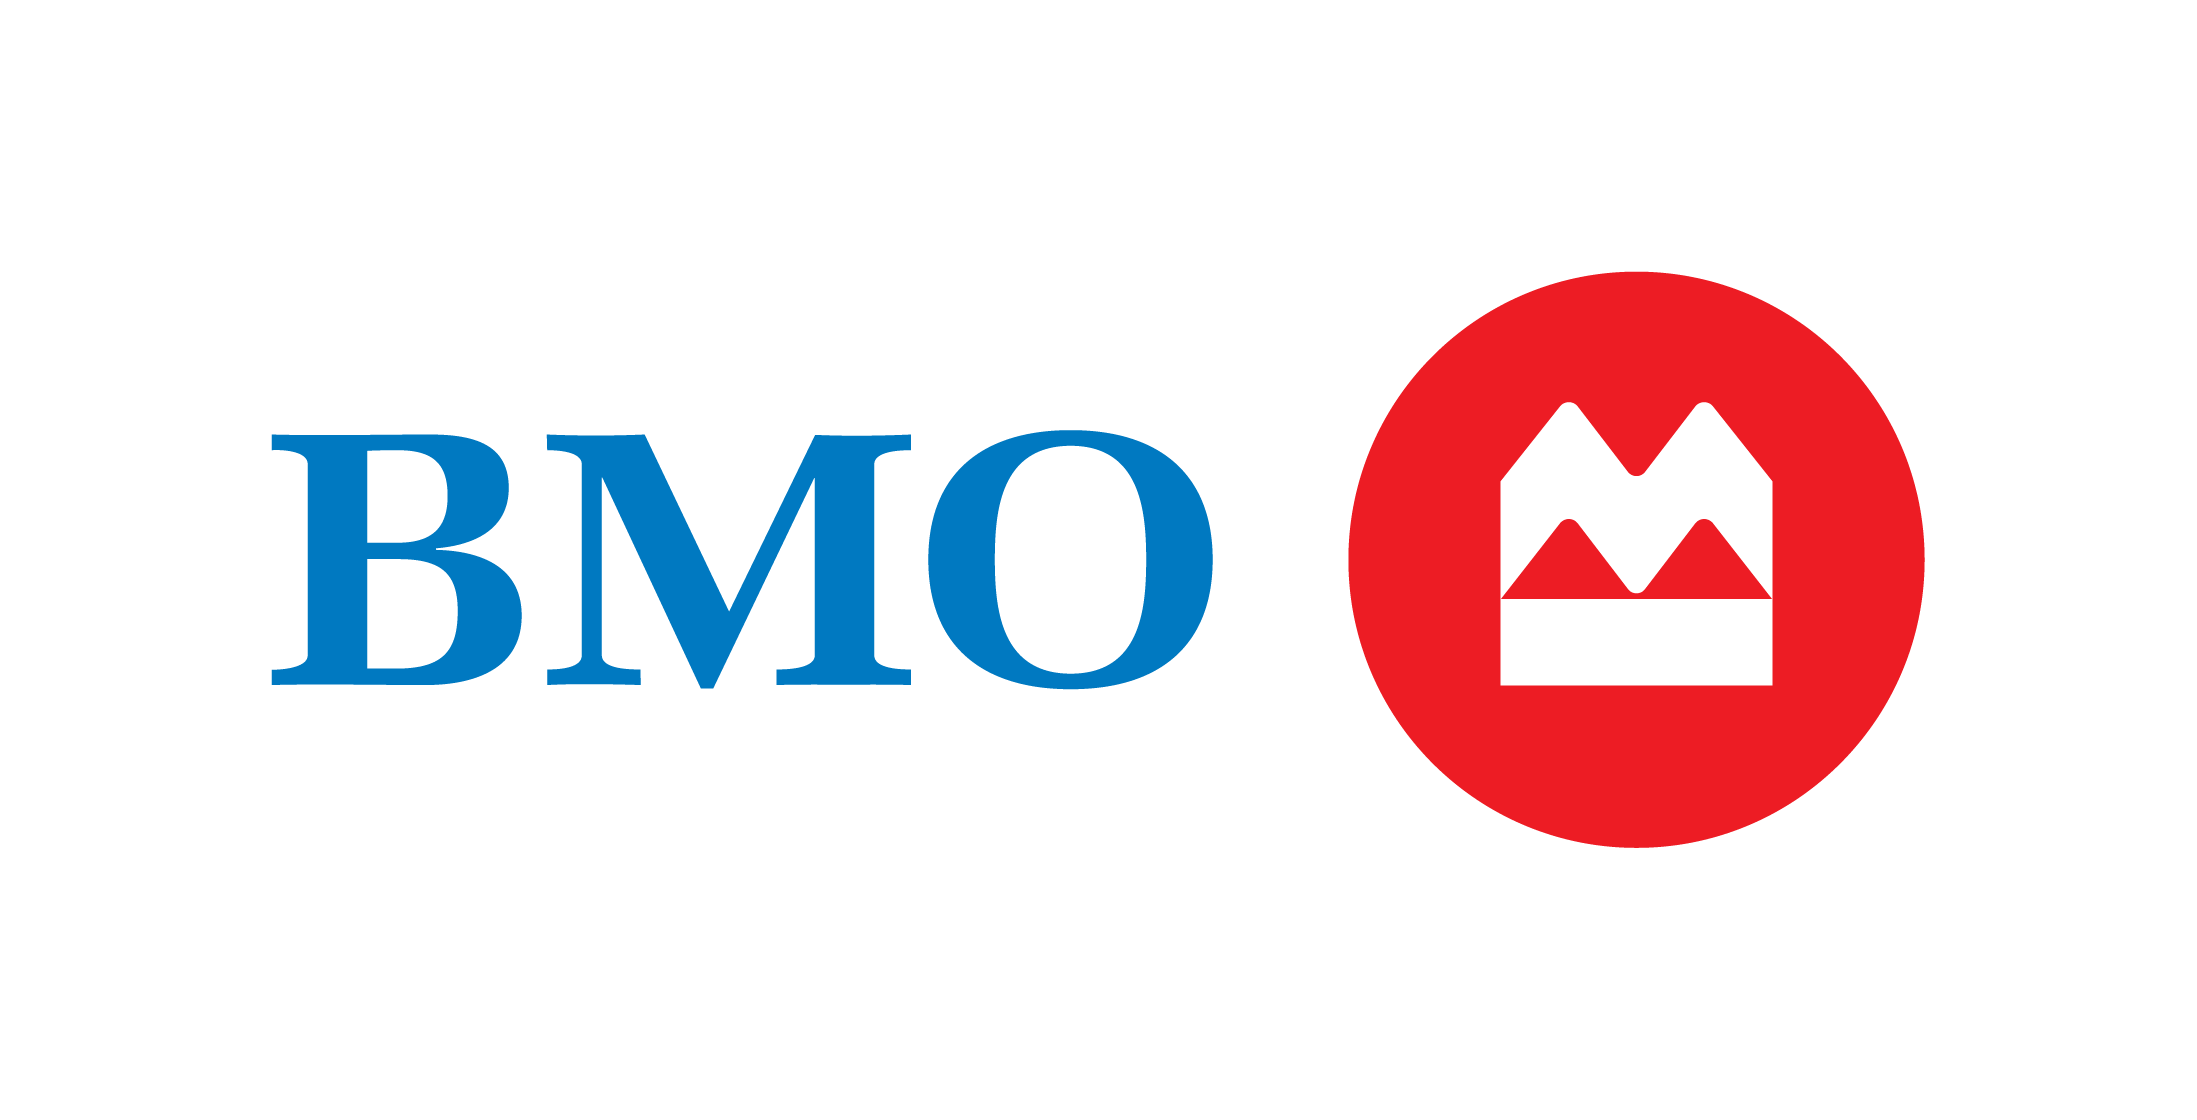 BMO-MB_2 logo.png